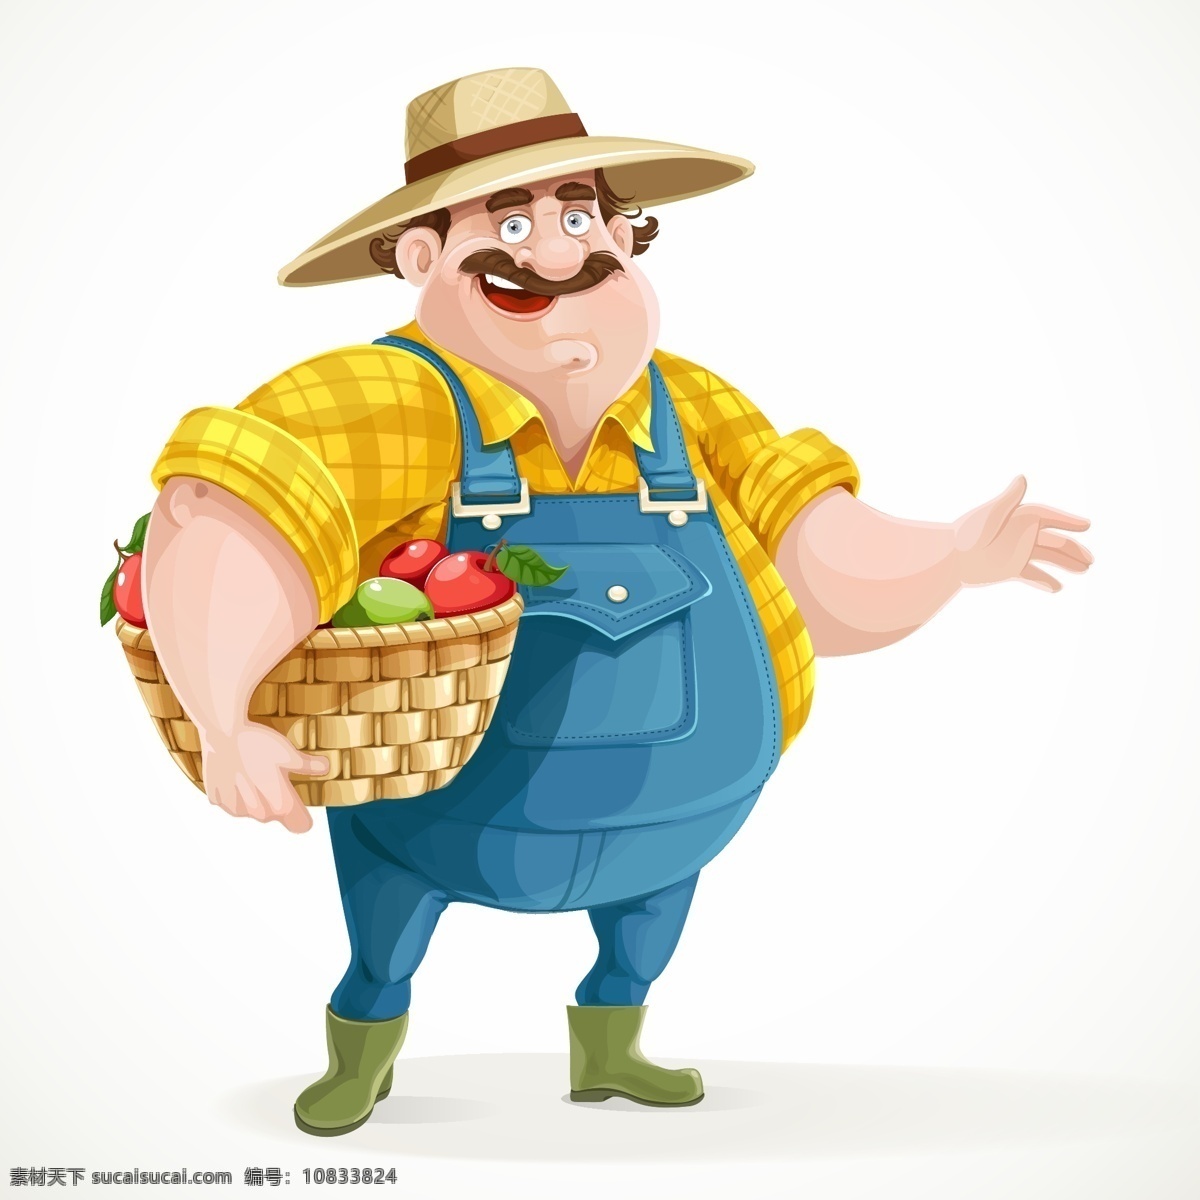 抱 水果篮子 农民 插画 卡通水果 戴帽子的农民 卡通男人漫画 男性插画 生活百科 矢量素材